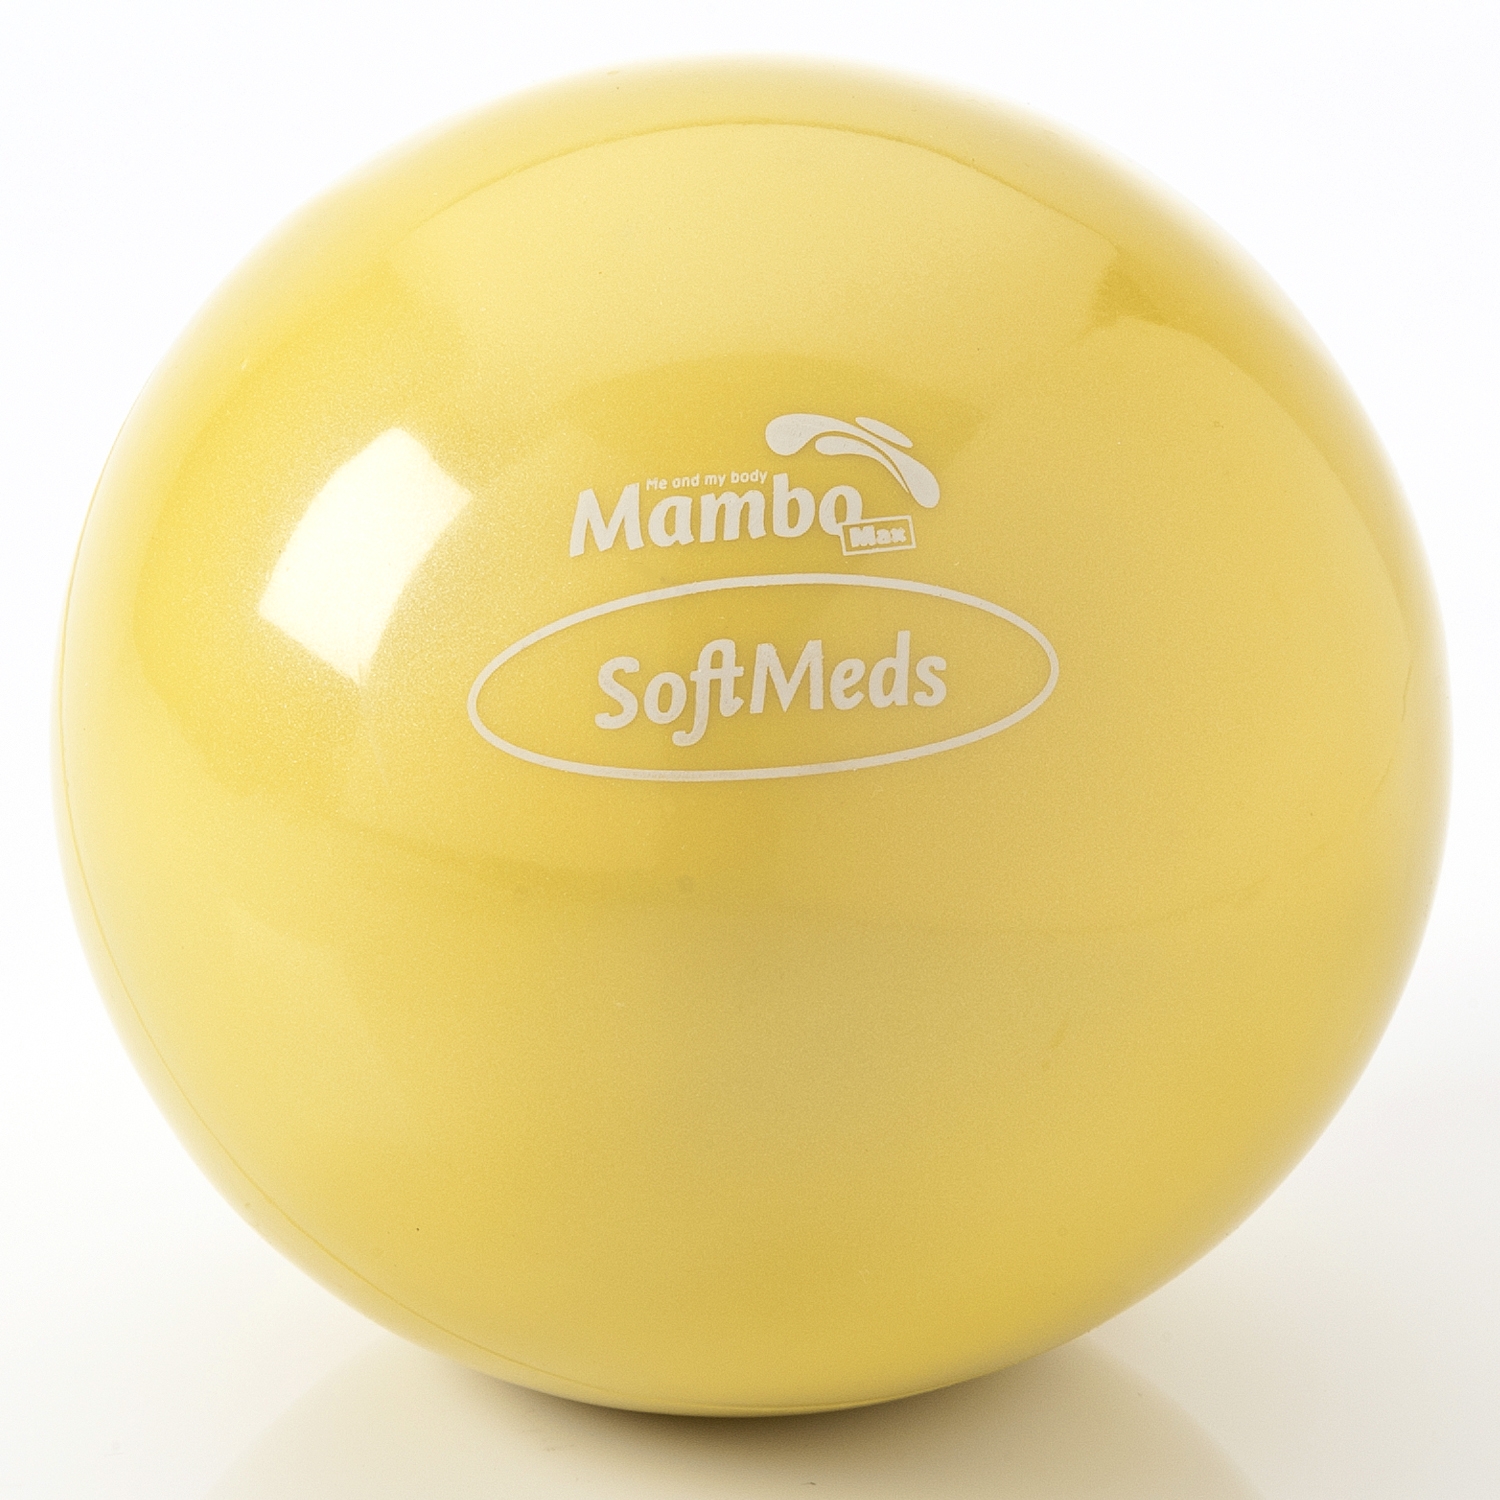 Softmed balle de poids - Mambo - 1,0 kg - jaune